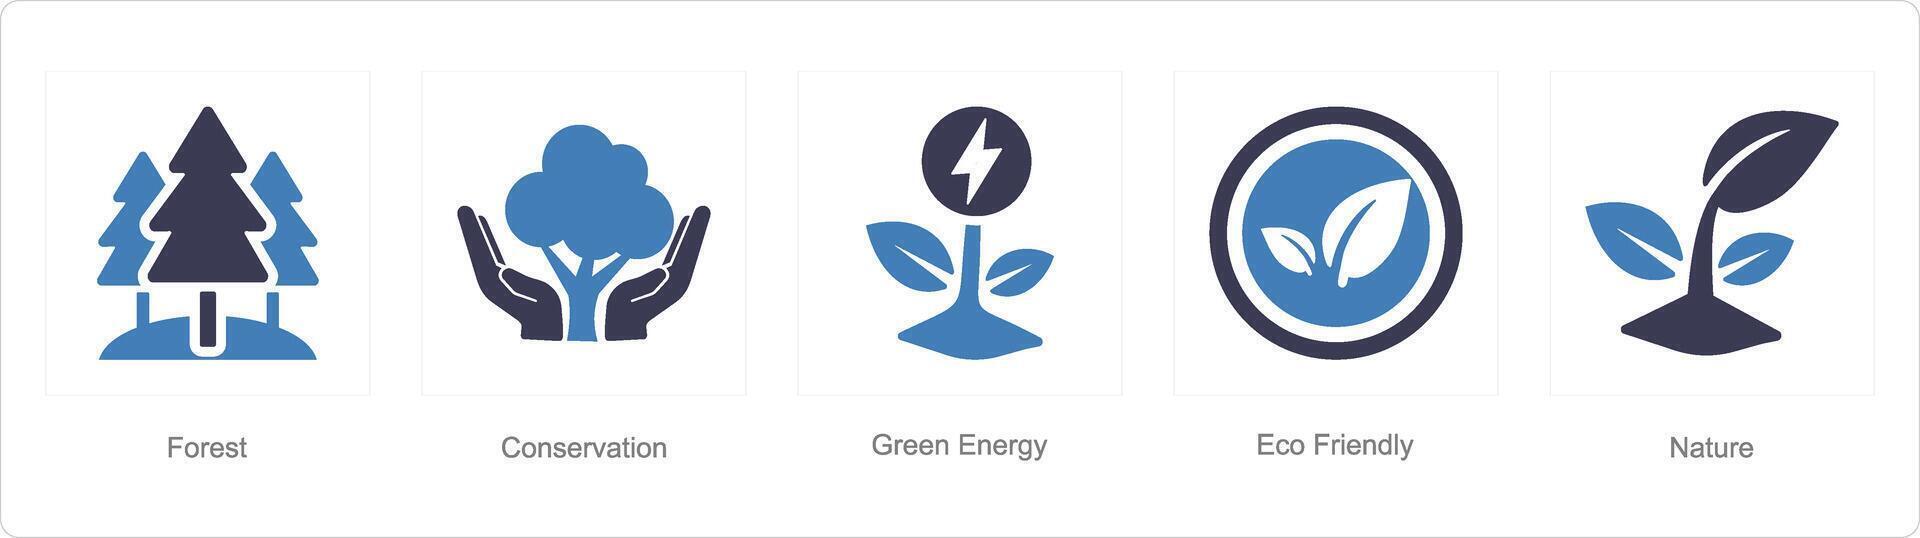 en uppsättning av 5 ekologi ikoner som skog, bevarande, grön energi vektor